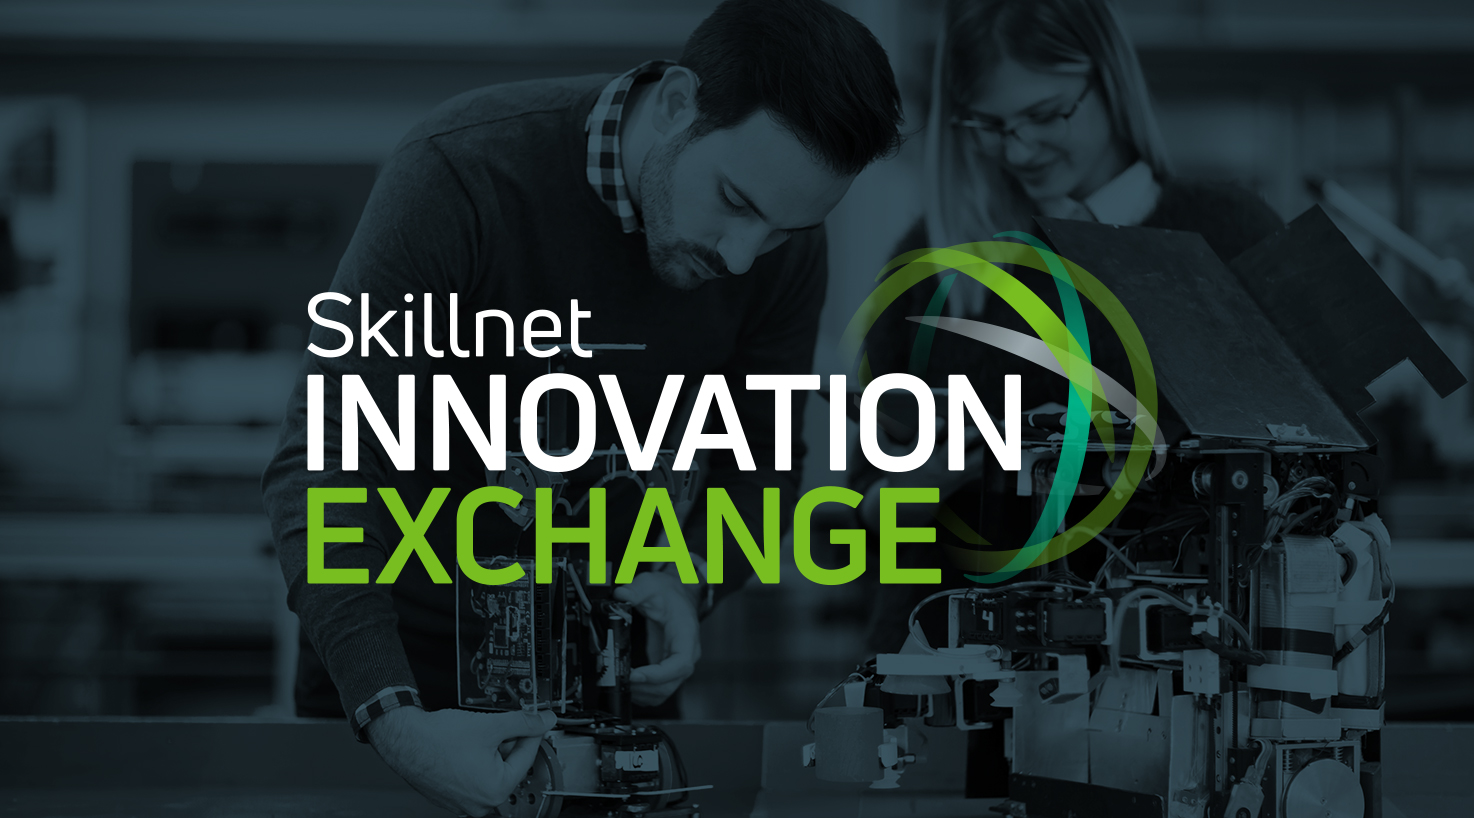 Skillnet Innovation Exchange